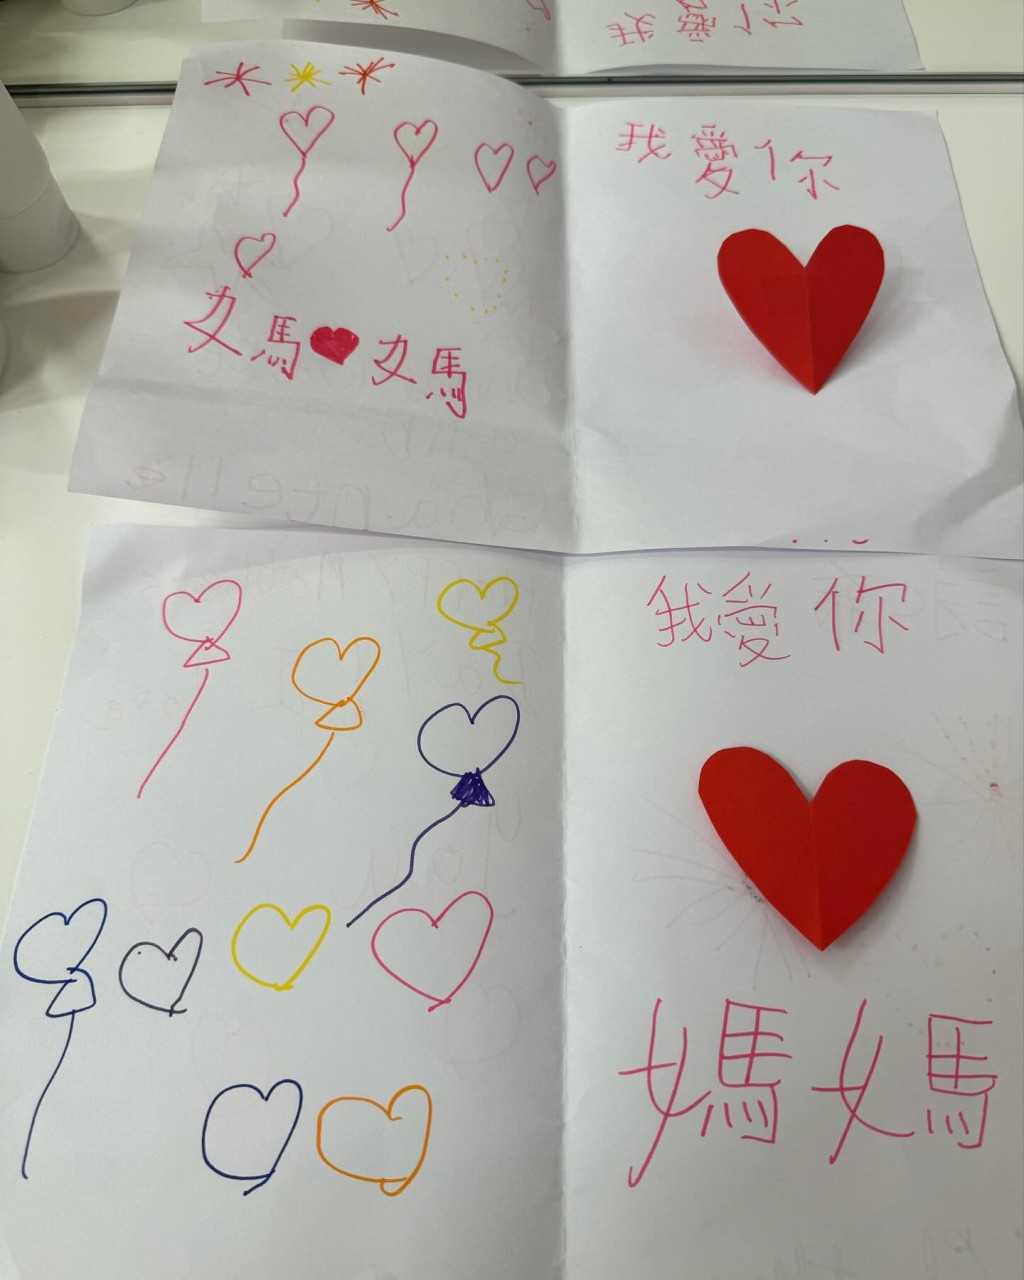 心意卡的內頁用上紅、橙、黃及藍色畫上煙花及氣球，並在右邊貼上心心，並再寫上「我愛你 媽媽」字體簡潔整齊。